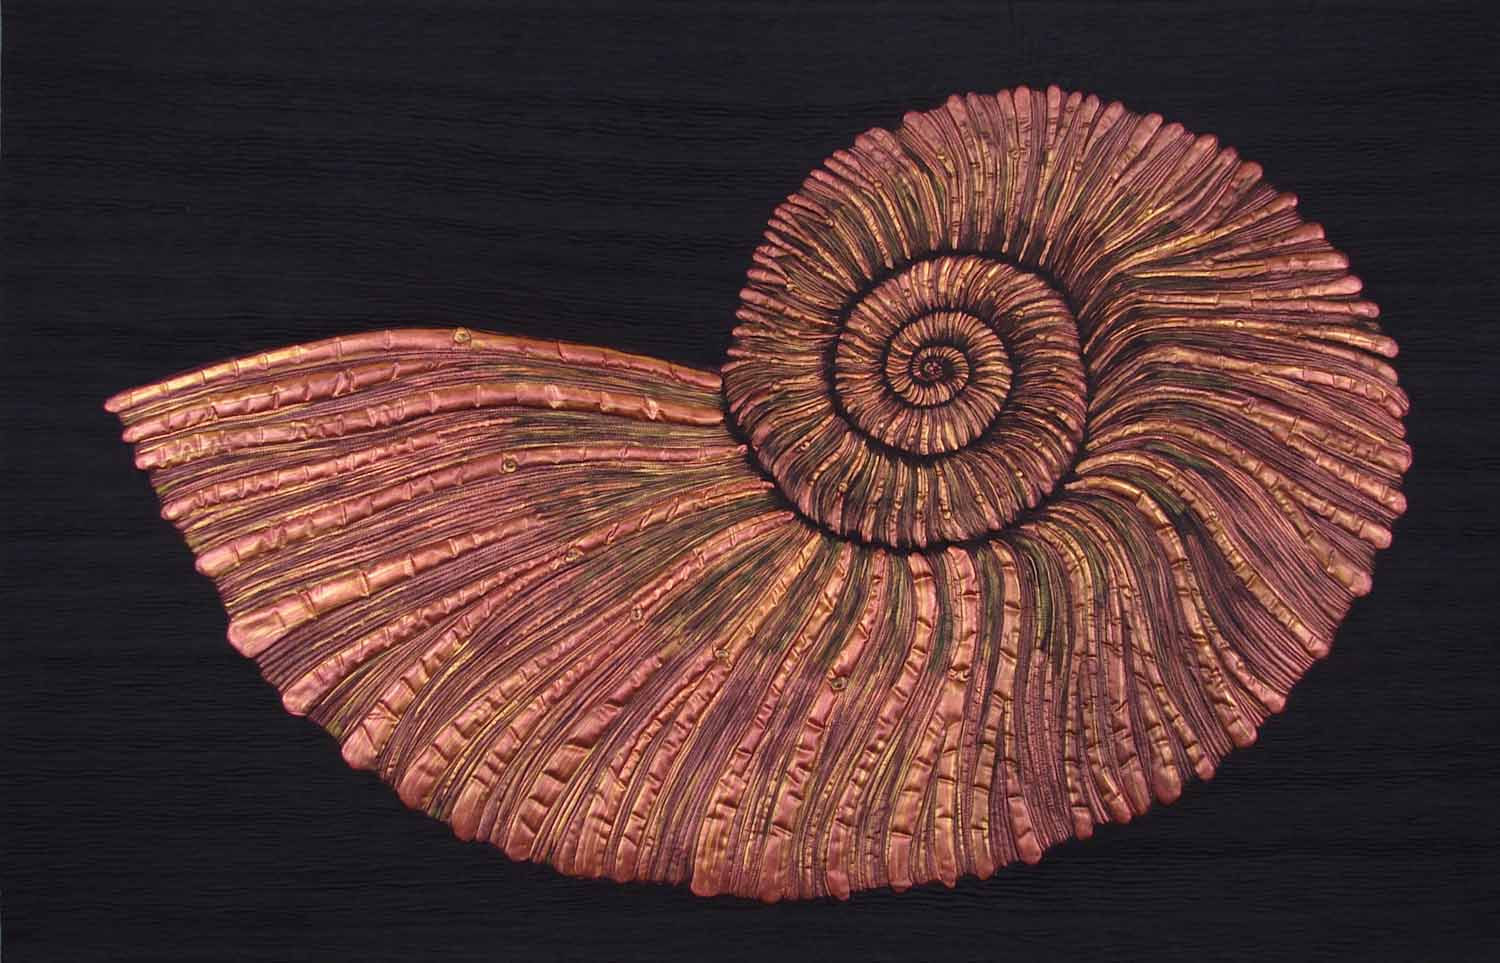 Russian Ammonite